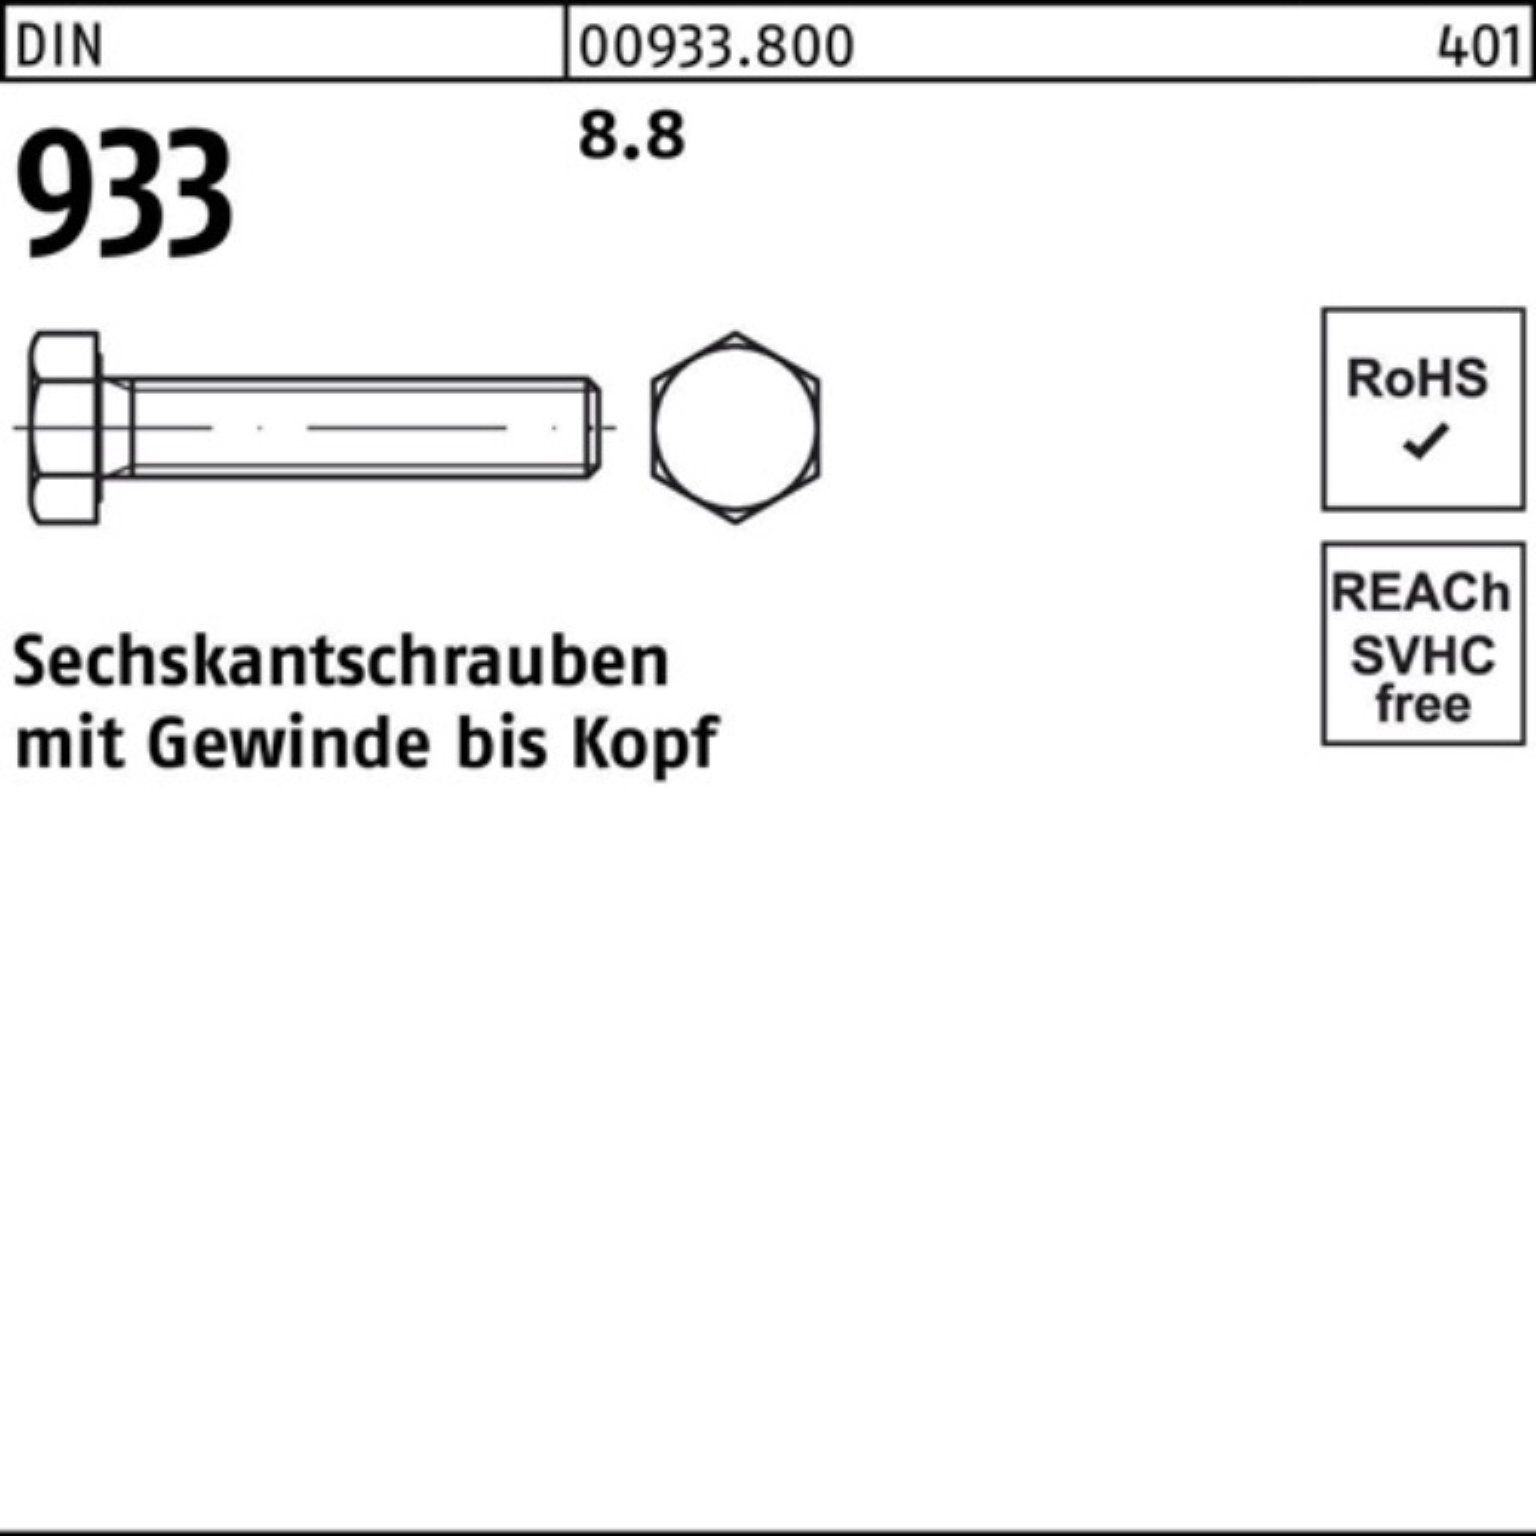 Reyher Sechskantschraube 500er Pack 500 VG 933 Sechskantschraube DIN M4x 933 Stück 8.8 DIN 14